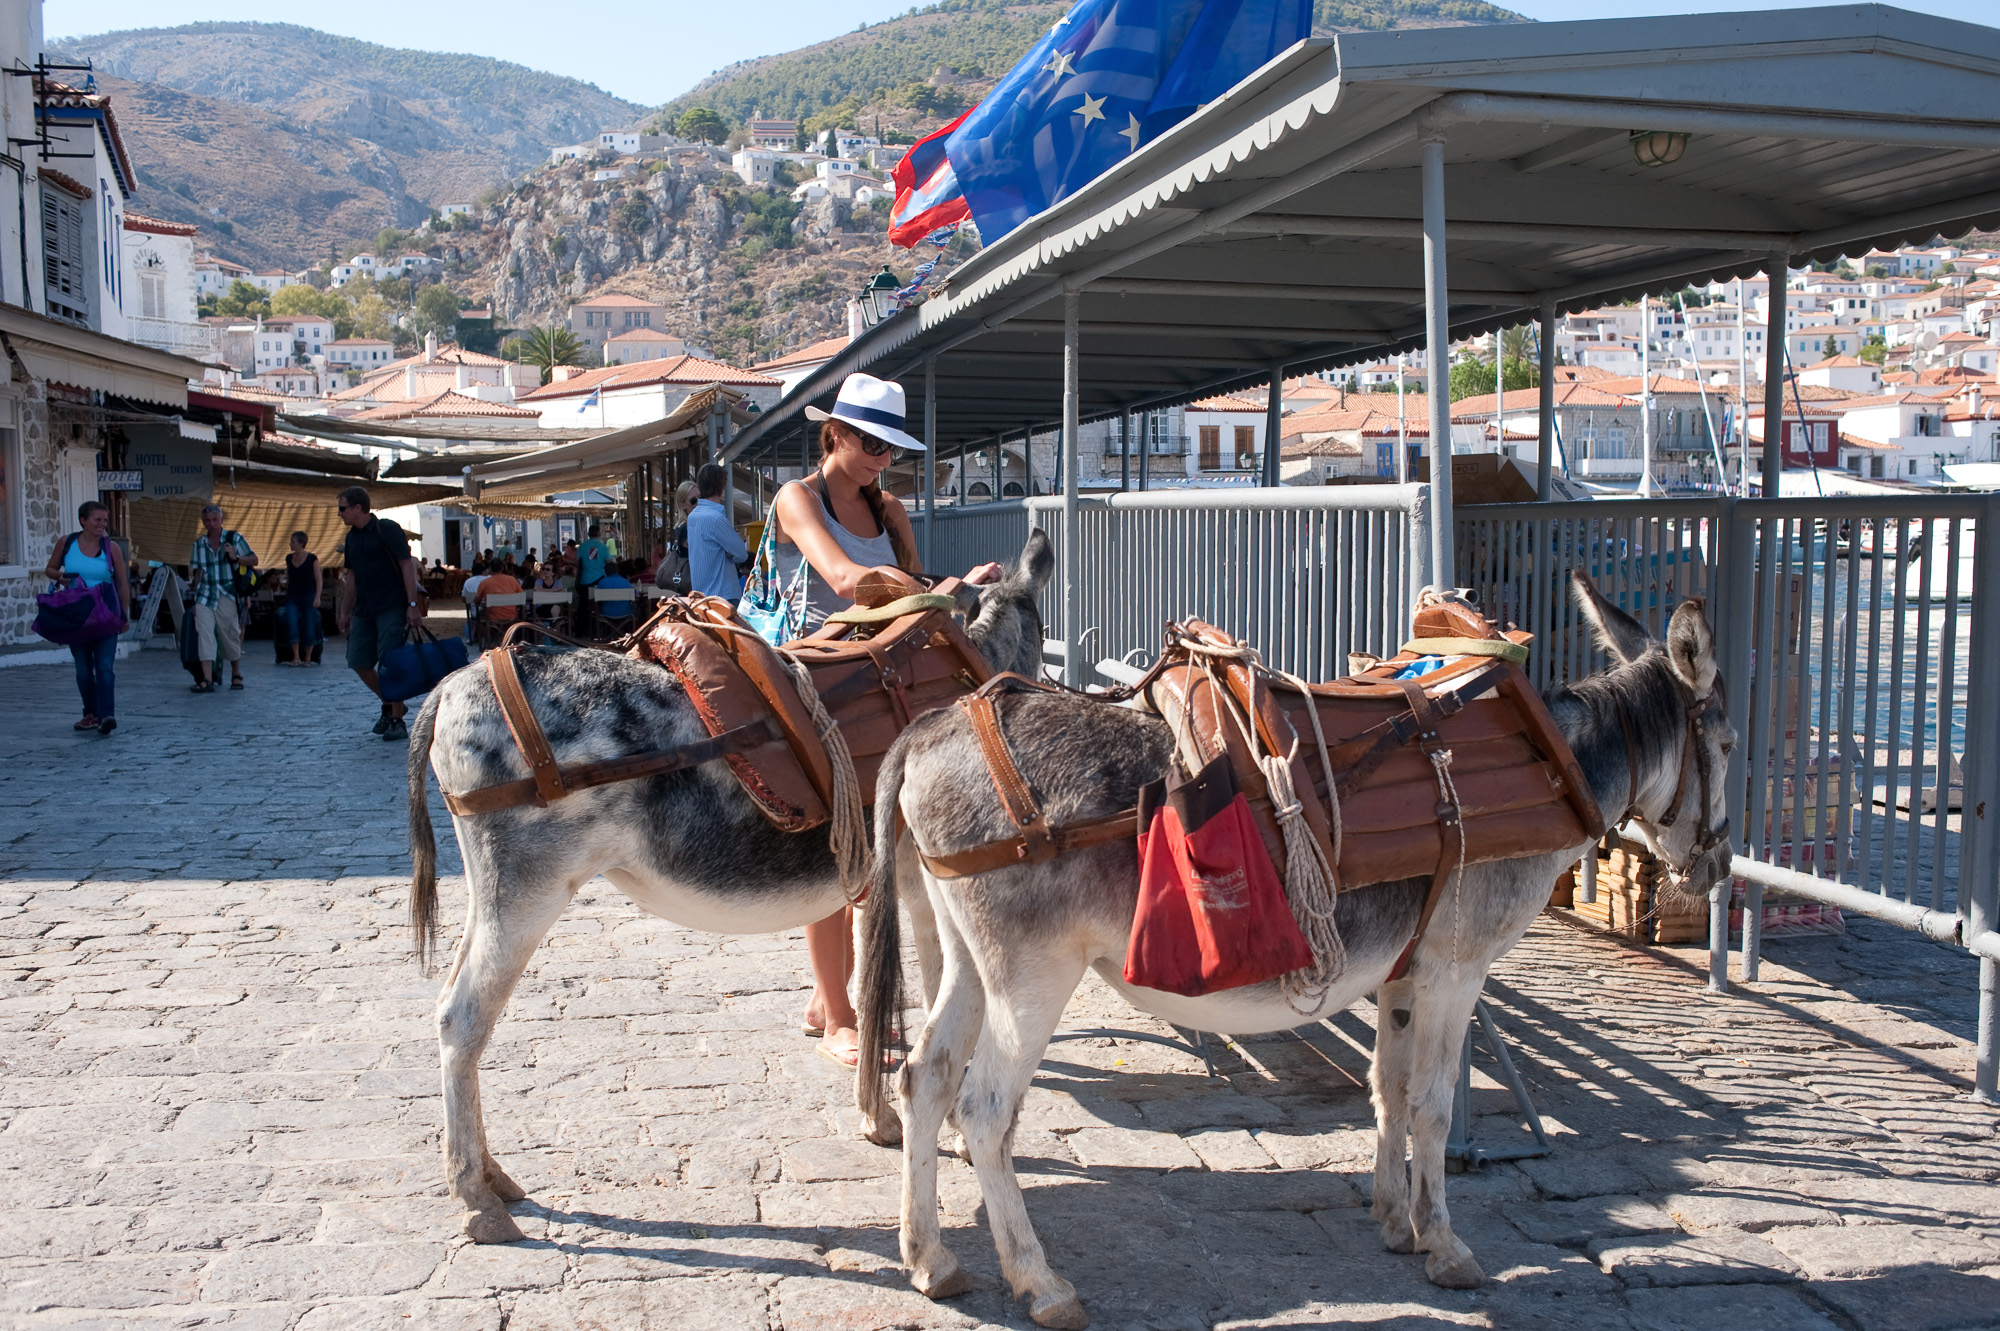 Le village d'hydra. Les mules remplacent les taxis, aussi bien pour les passagers que pour les marchandise.